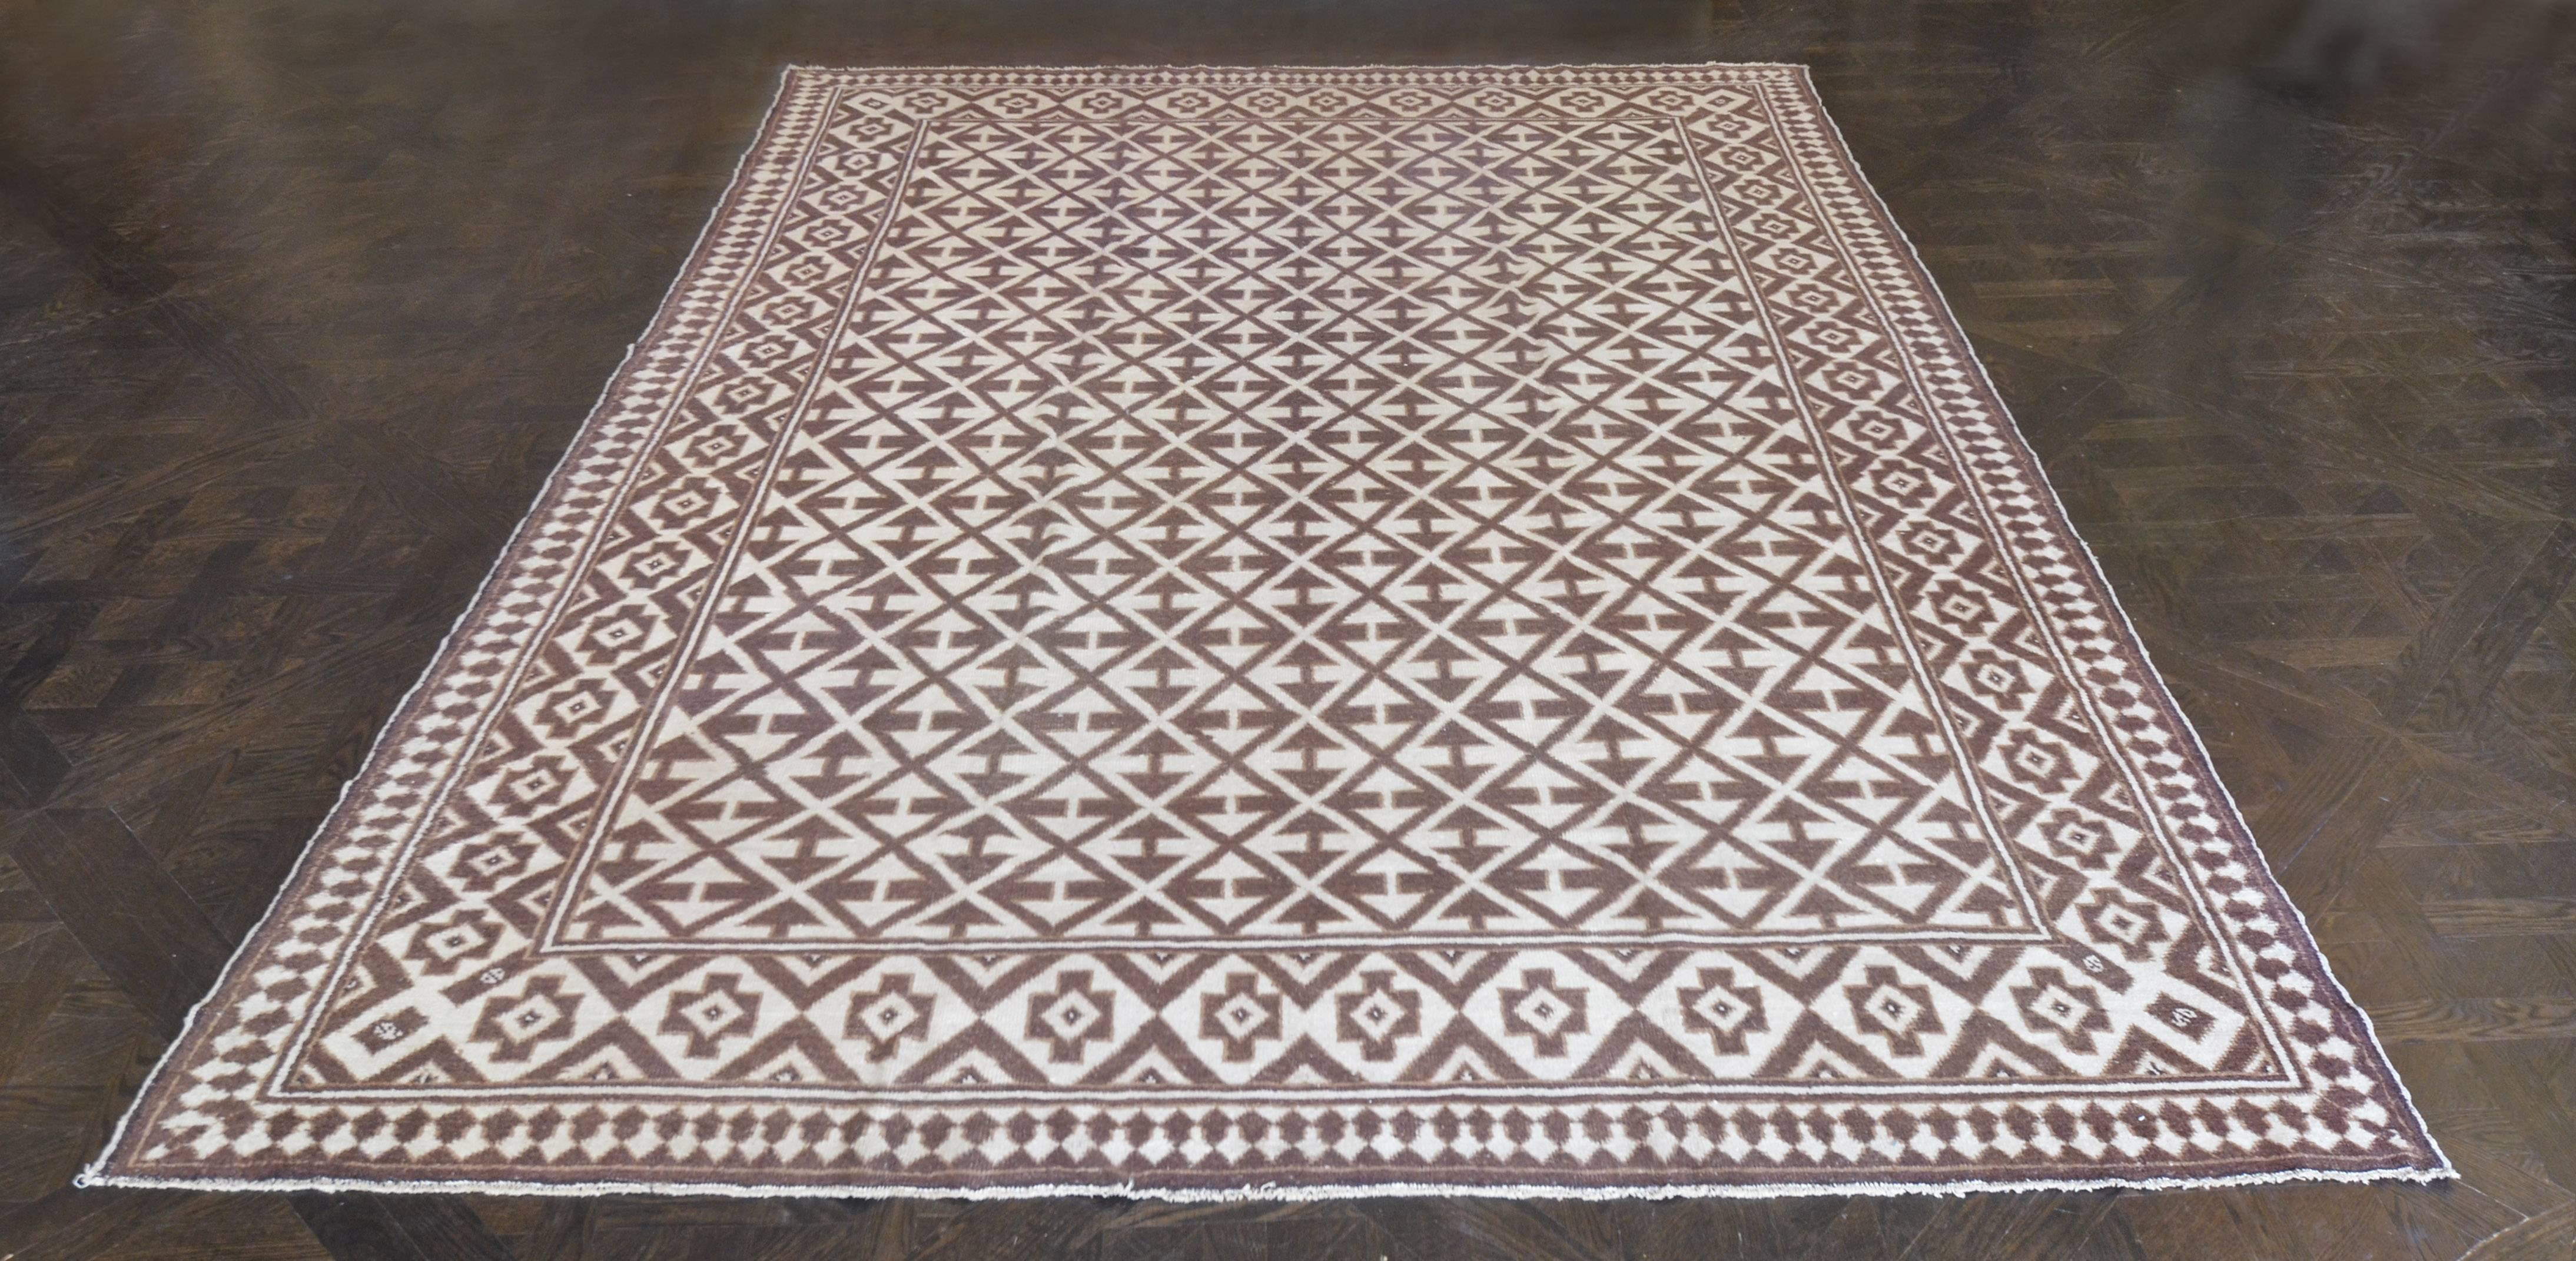 Dieser traditionelle, handgewebte marokkanische Teppich hat ein schokoladenfarbenes Feld mit einem diagonalen Rautengitter mit reziprokem Pfeilmotiv in einer komplizierten, zweifarbigen geometrischen Bordüre in Stahl und Braun, mit einem äußeren